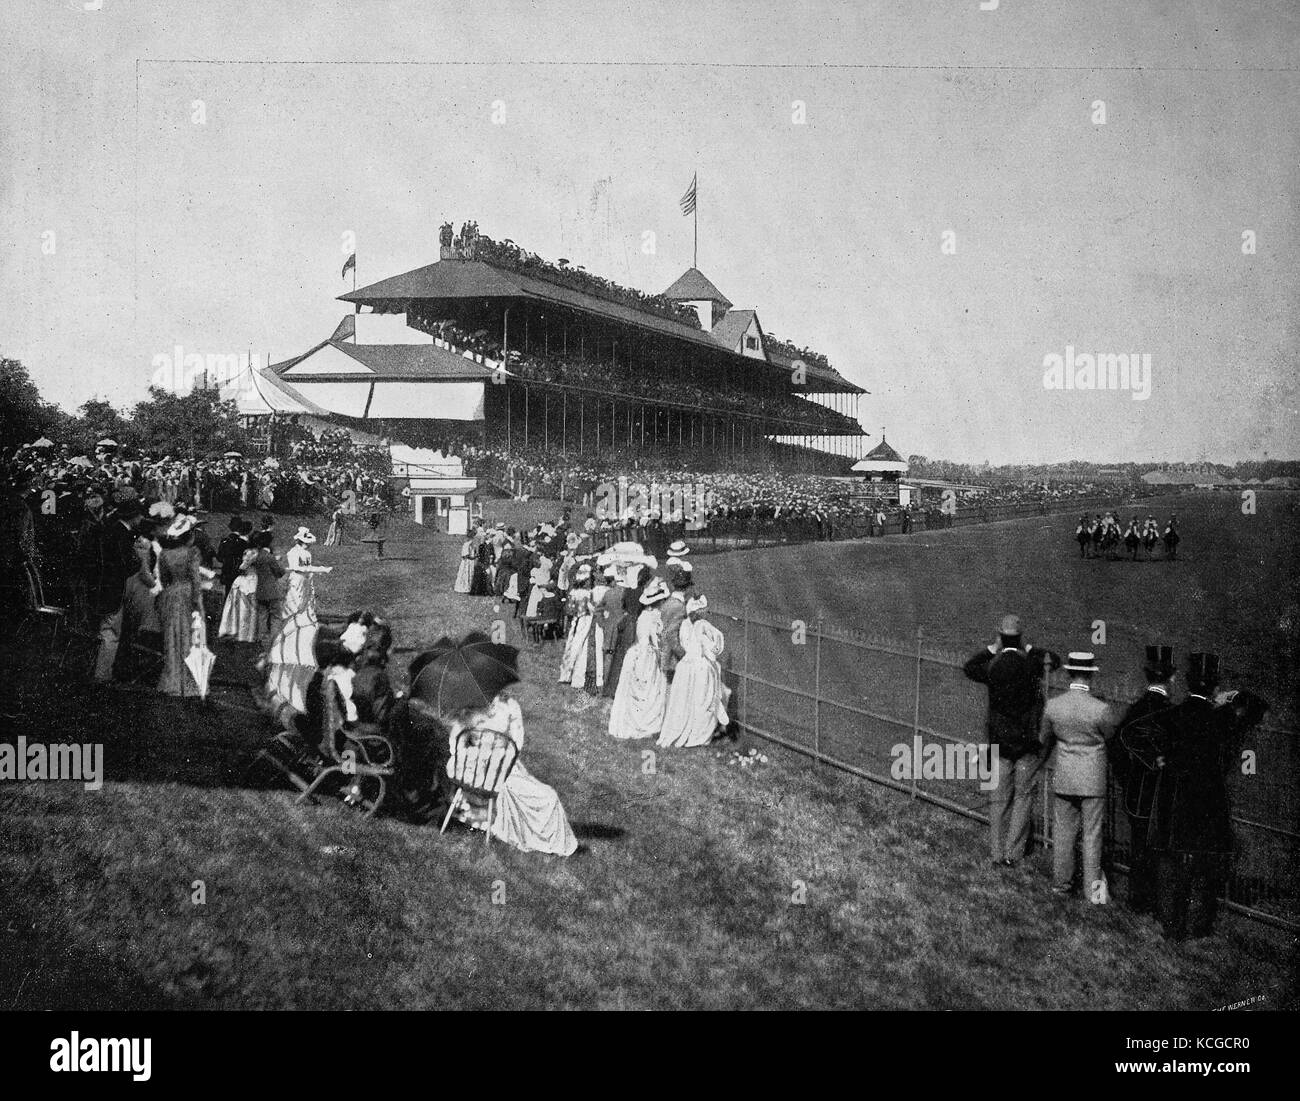 Vereinigte Staaten von Amerika, Pferderennen, Derby am Washington Park in Chicago, Illinois, digital verbesserte Reproduktion einer historischen Foto aus dem (geschätzten) Jahr 1899 Stockfoto